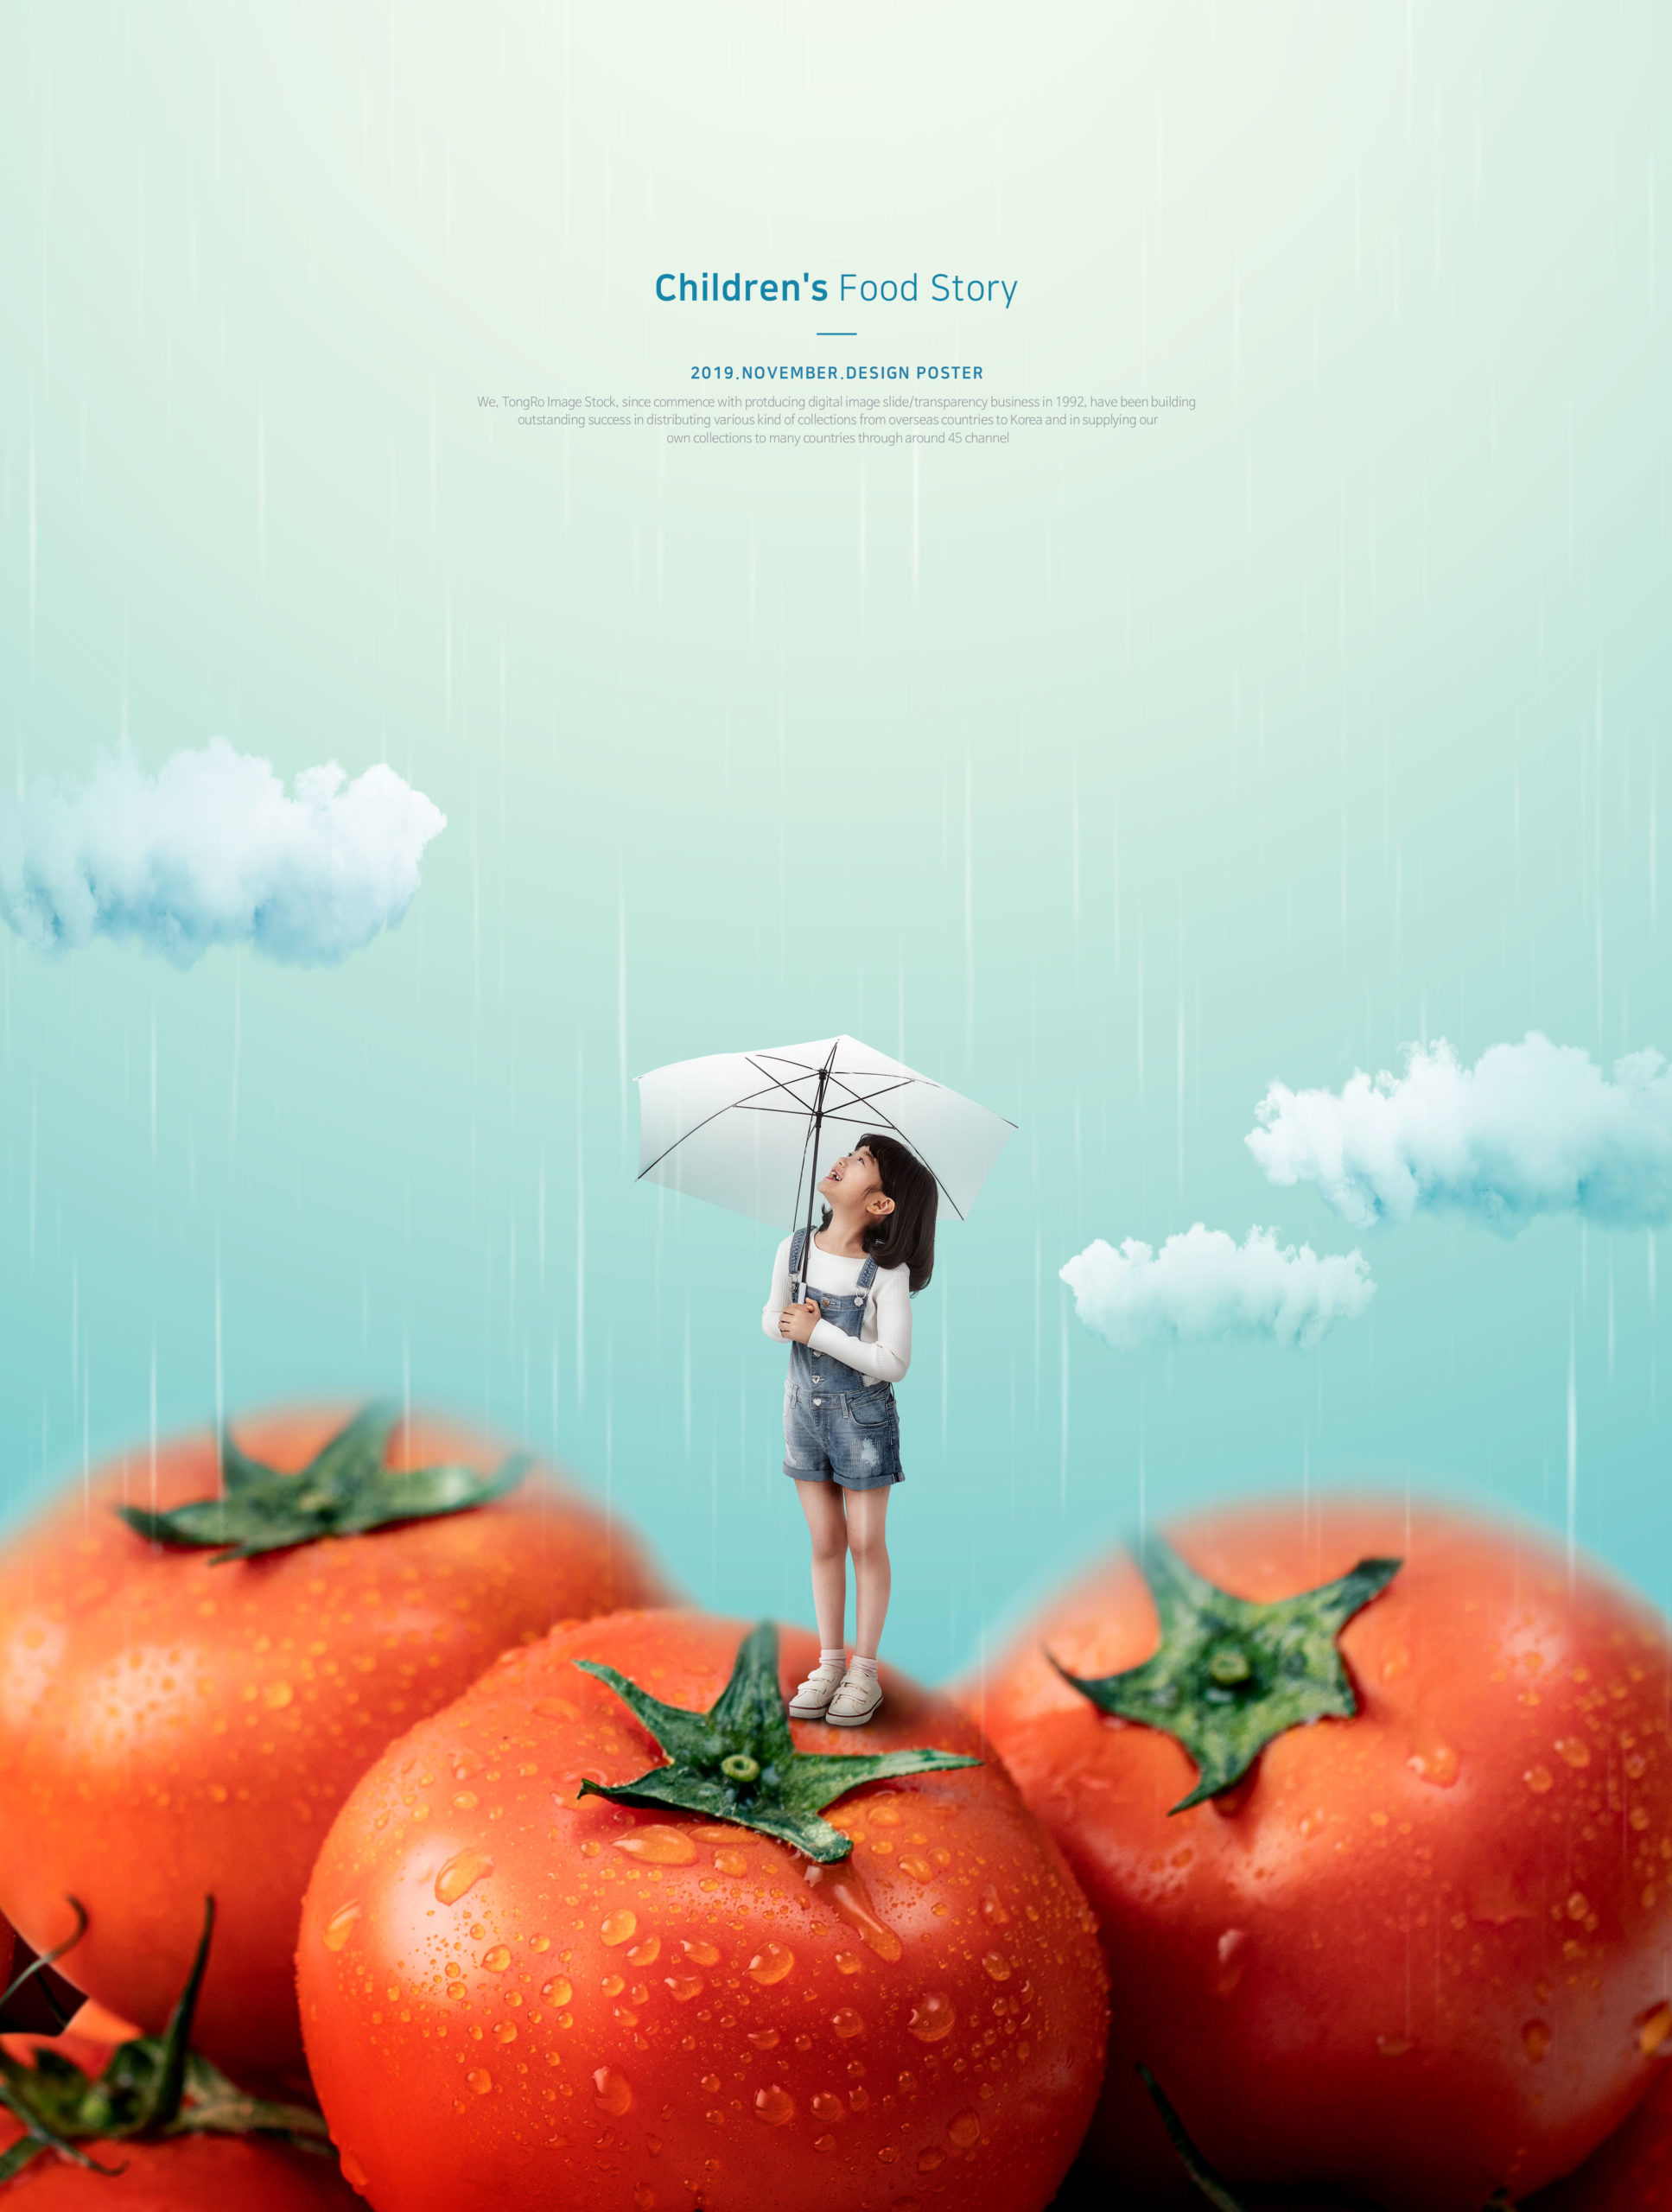 儿童主题西红柿食品海报PSD素材素材库精选模板插图